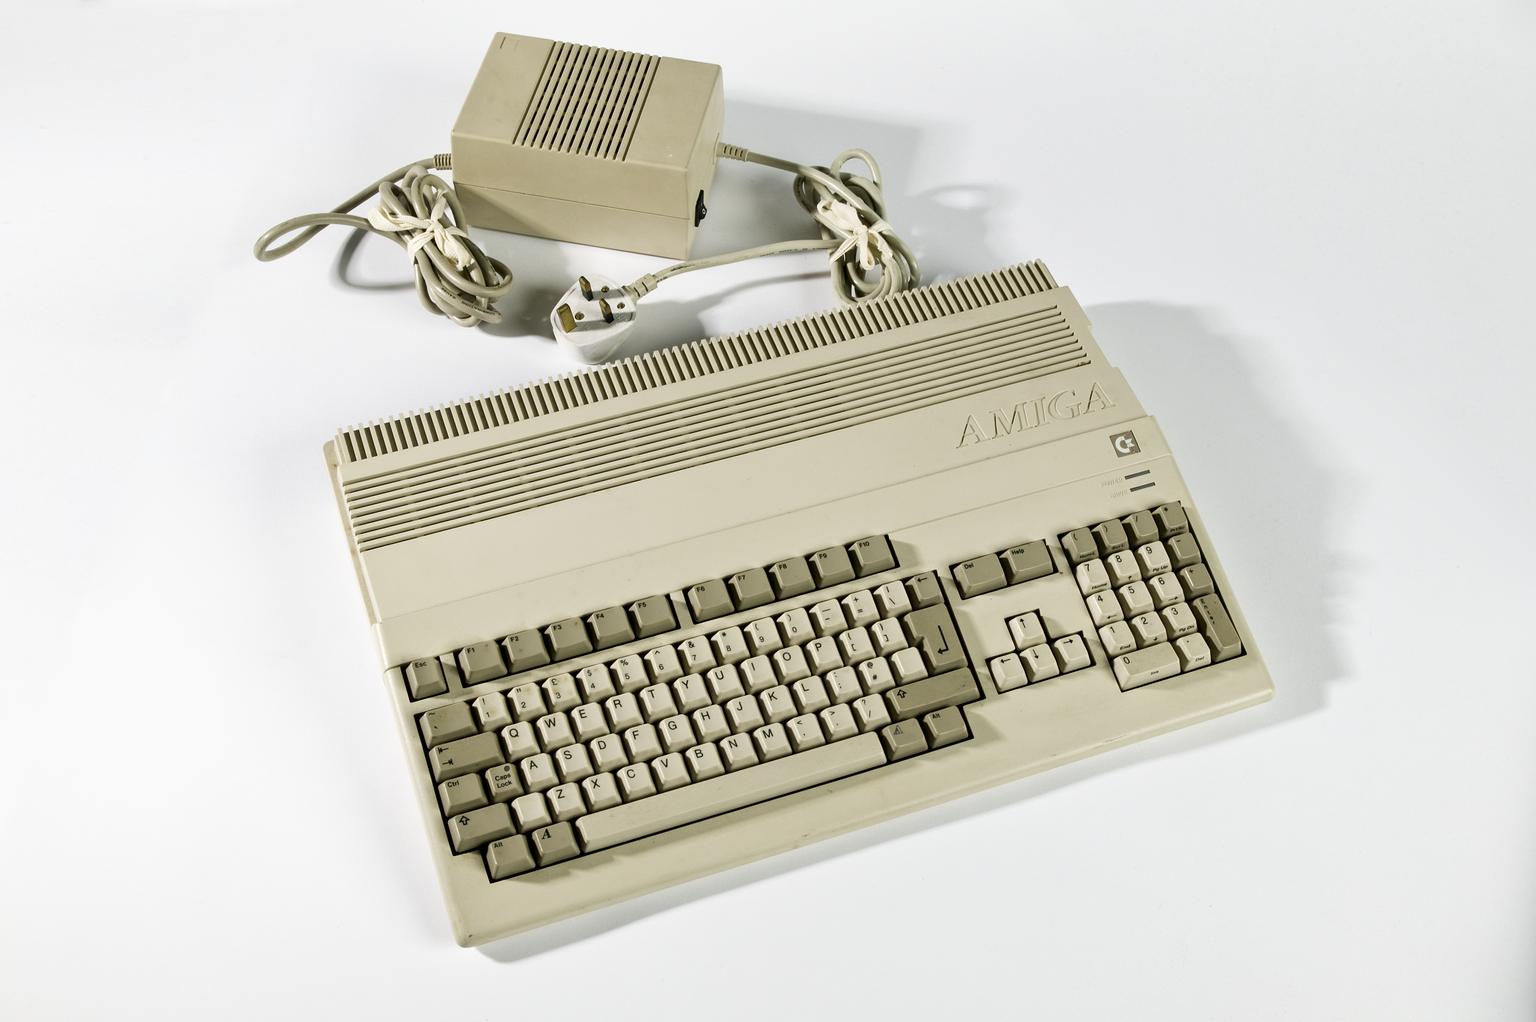 Commodore Amiga 500 microcomputer